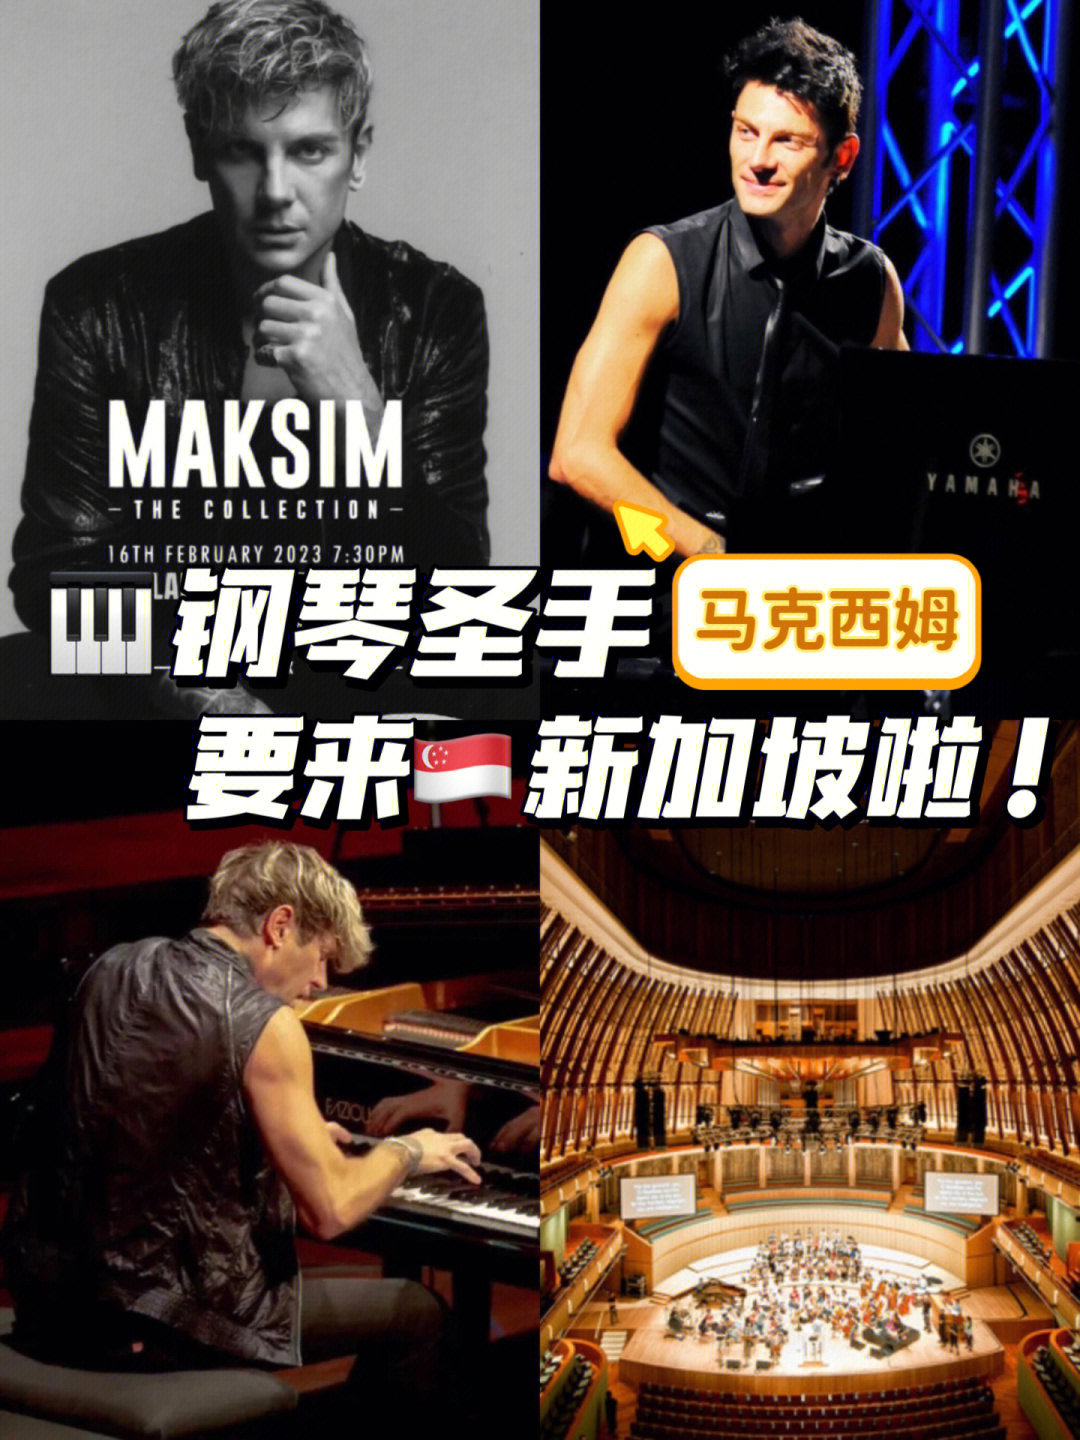 手速之王钢琴家马克西姆要来新加坡了